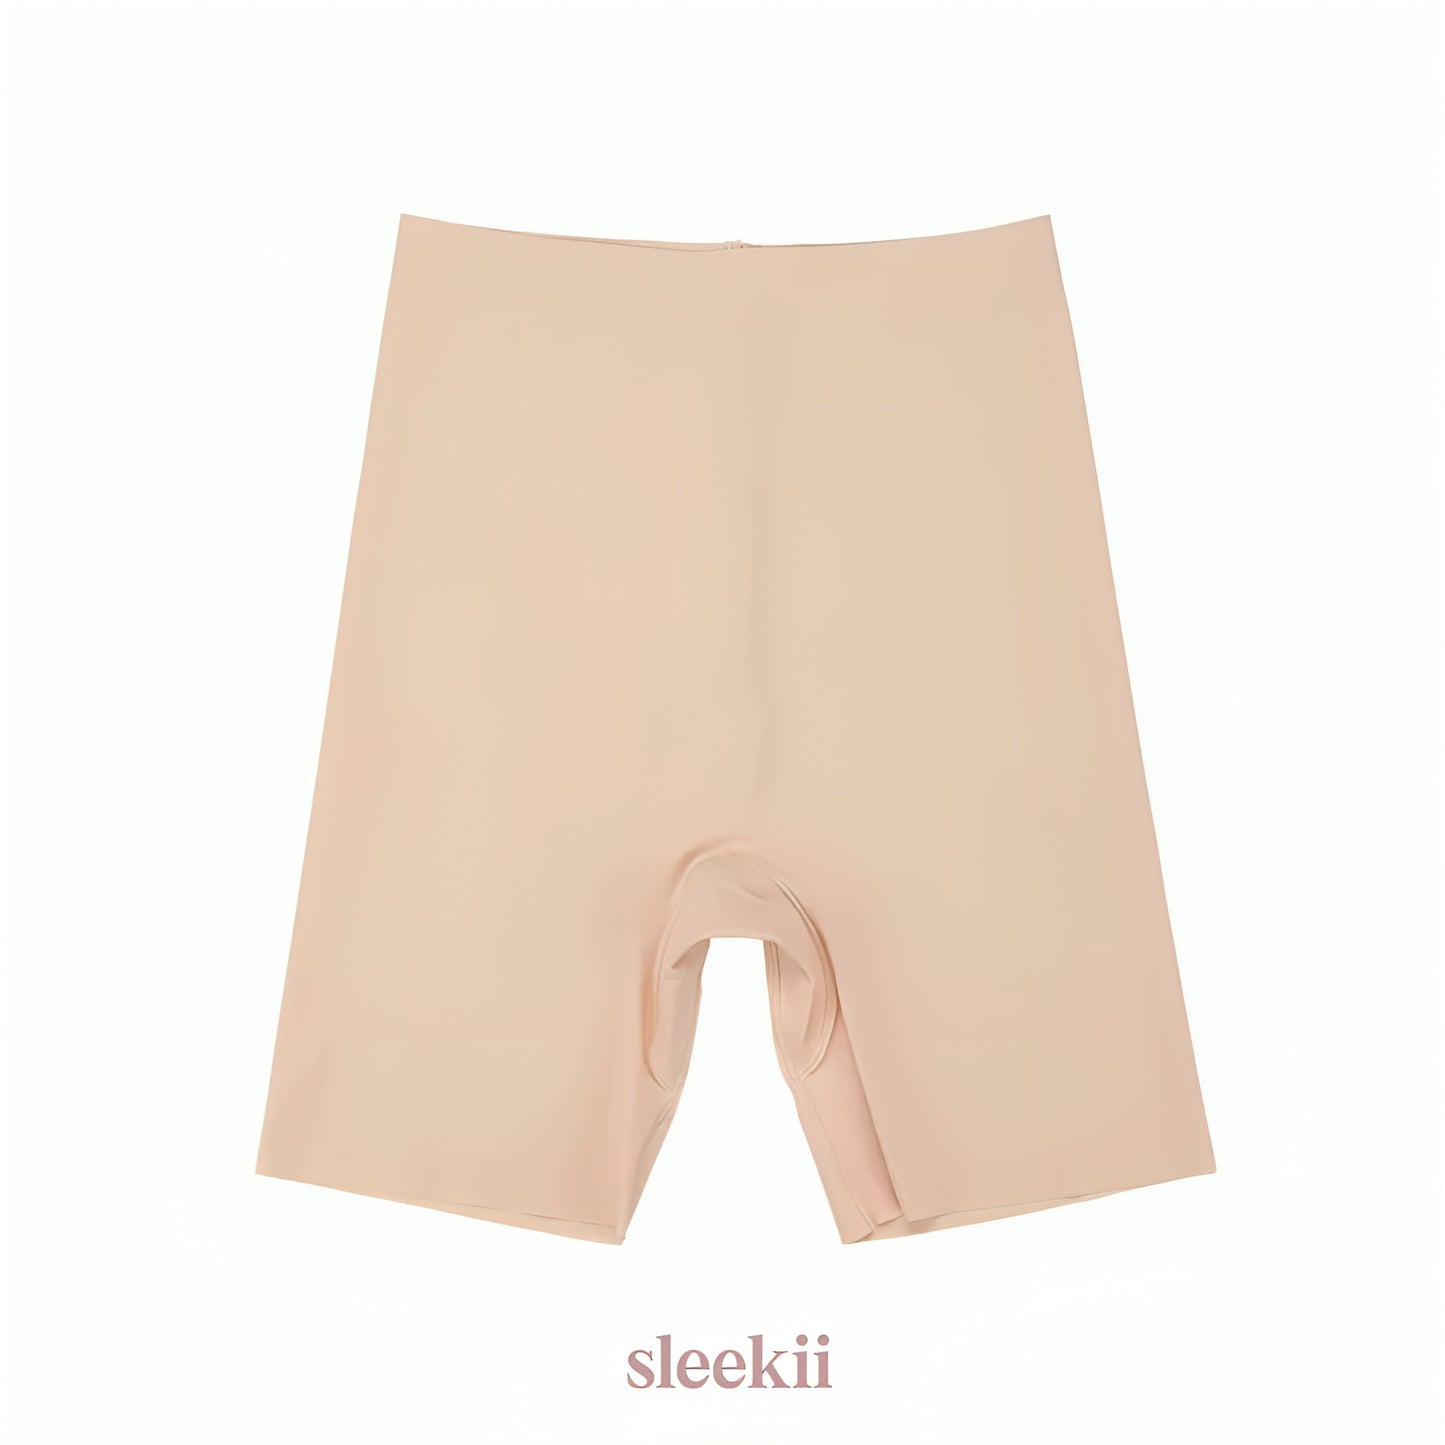 sleekii™ - shorts